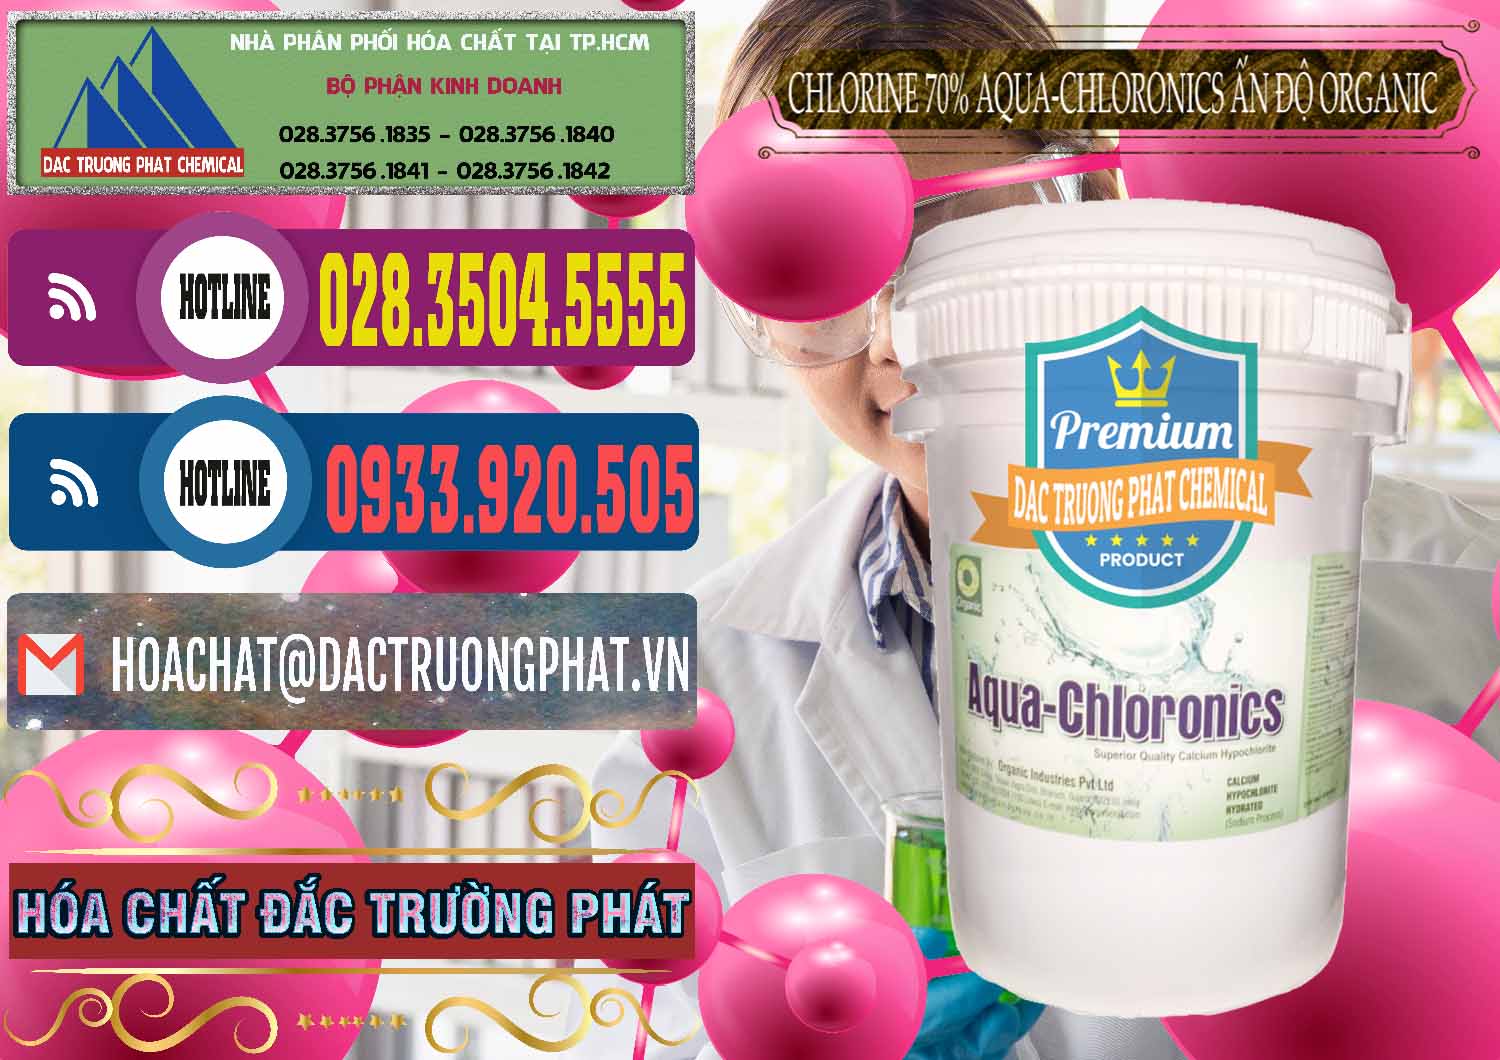 Cty chuyên bán - phân phối Chlorine – Clorin 70% Aqua-Chloronics Ấn Độ Organic India - 0211 - Cung cấp - phân phối hóa chất tại TP.HCM - muabanhoachat.com.vn